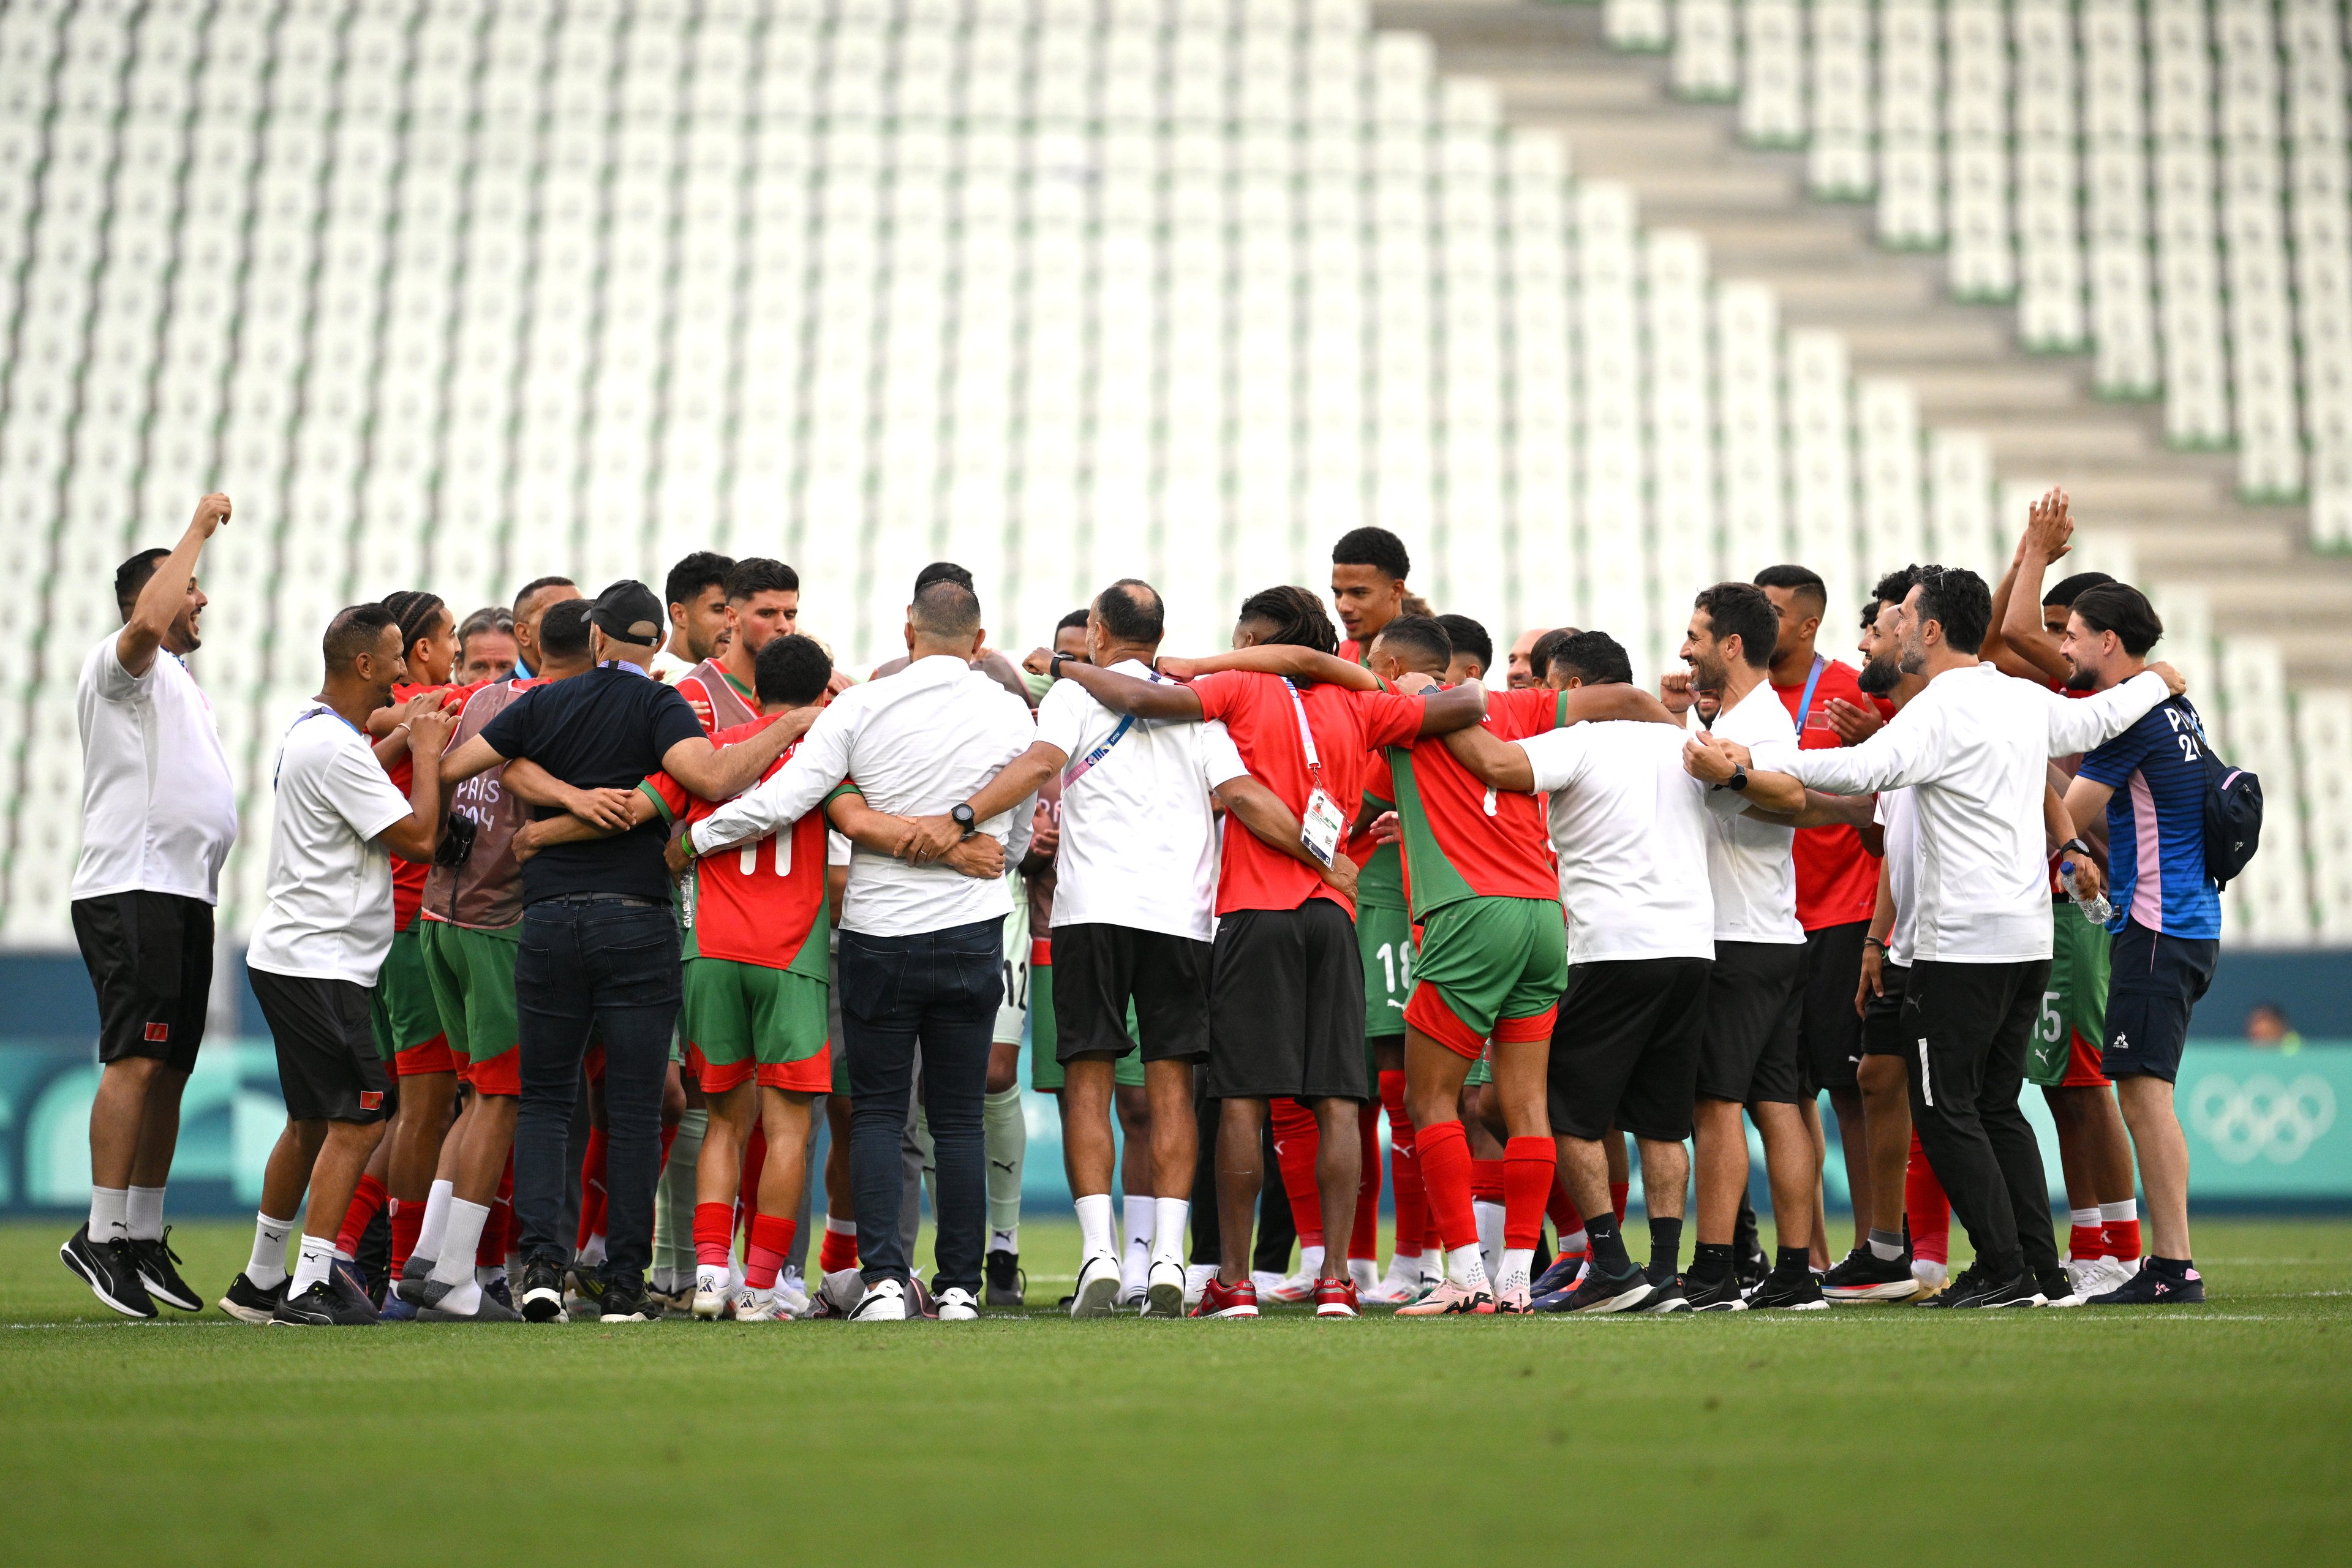 Jogadores do Time Marrocos comemoram após a vitória da equipe na partida do grupo B masculino entre Argentina e Marrocos durante os Jogos Olímpicos de Paris 2024 no Stade Geoffroy-Guichard em 24 de julho de 2024 em Saint-Etienne, França. 